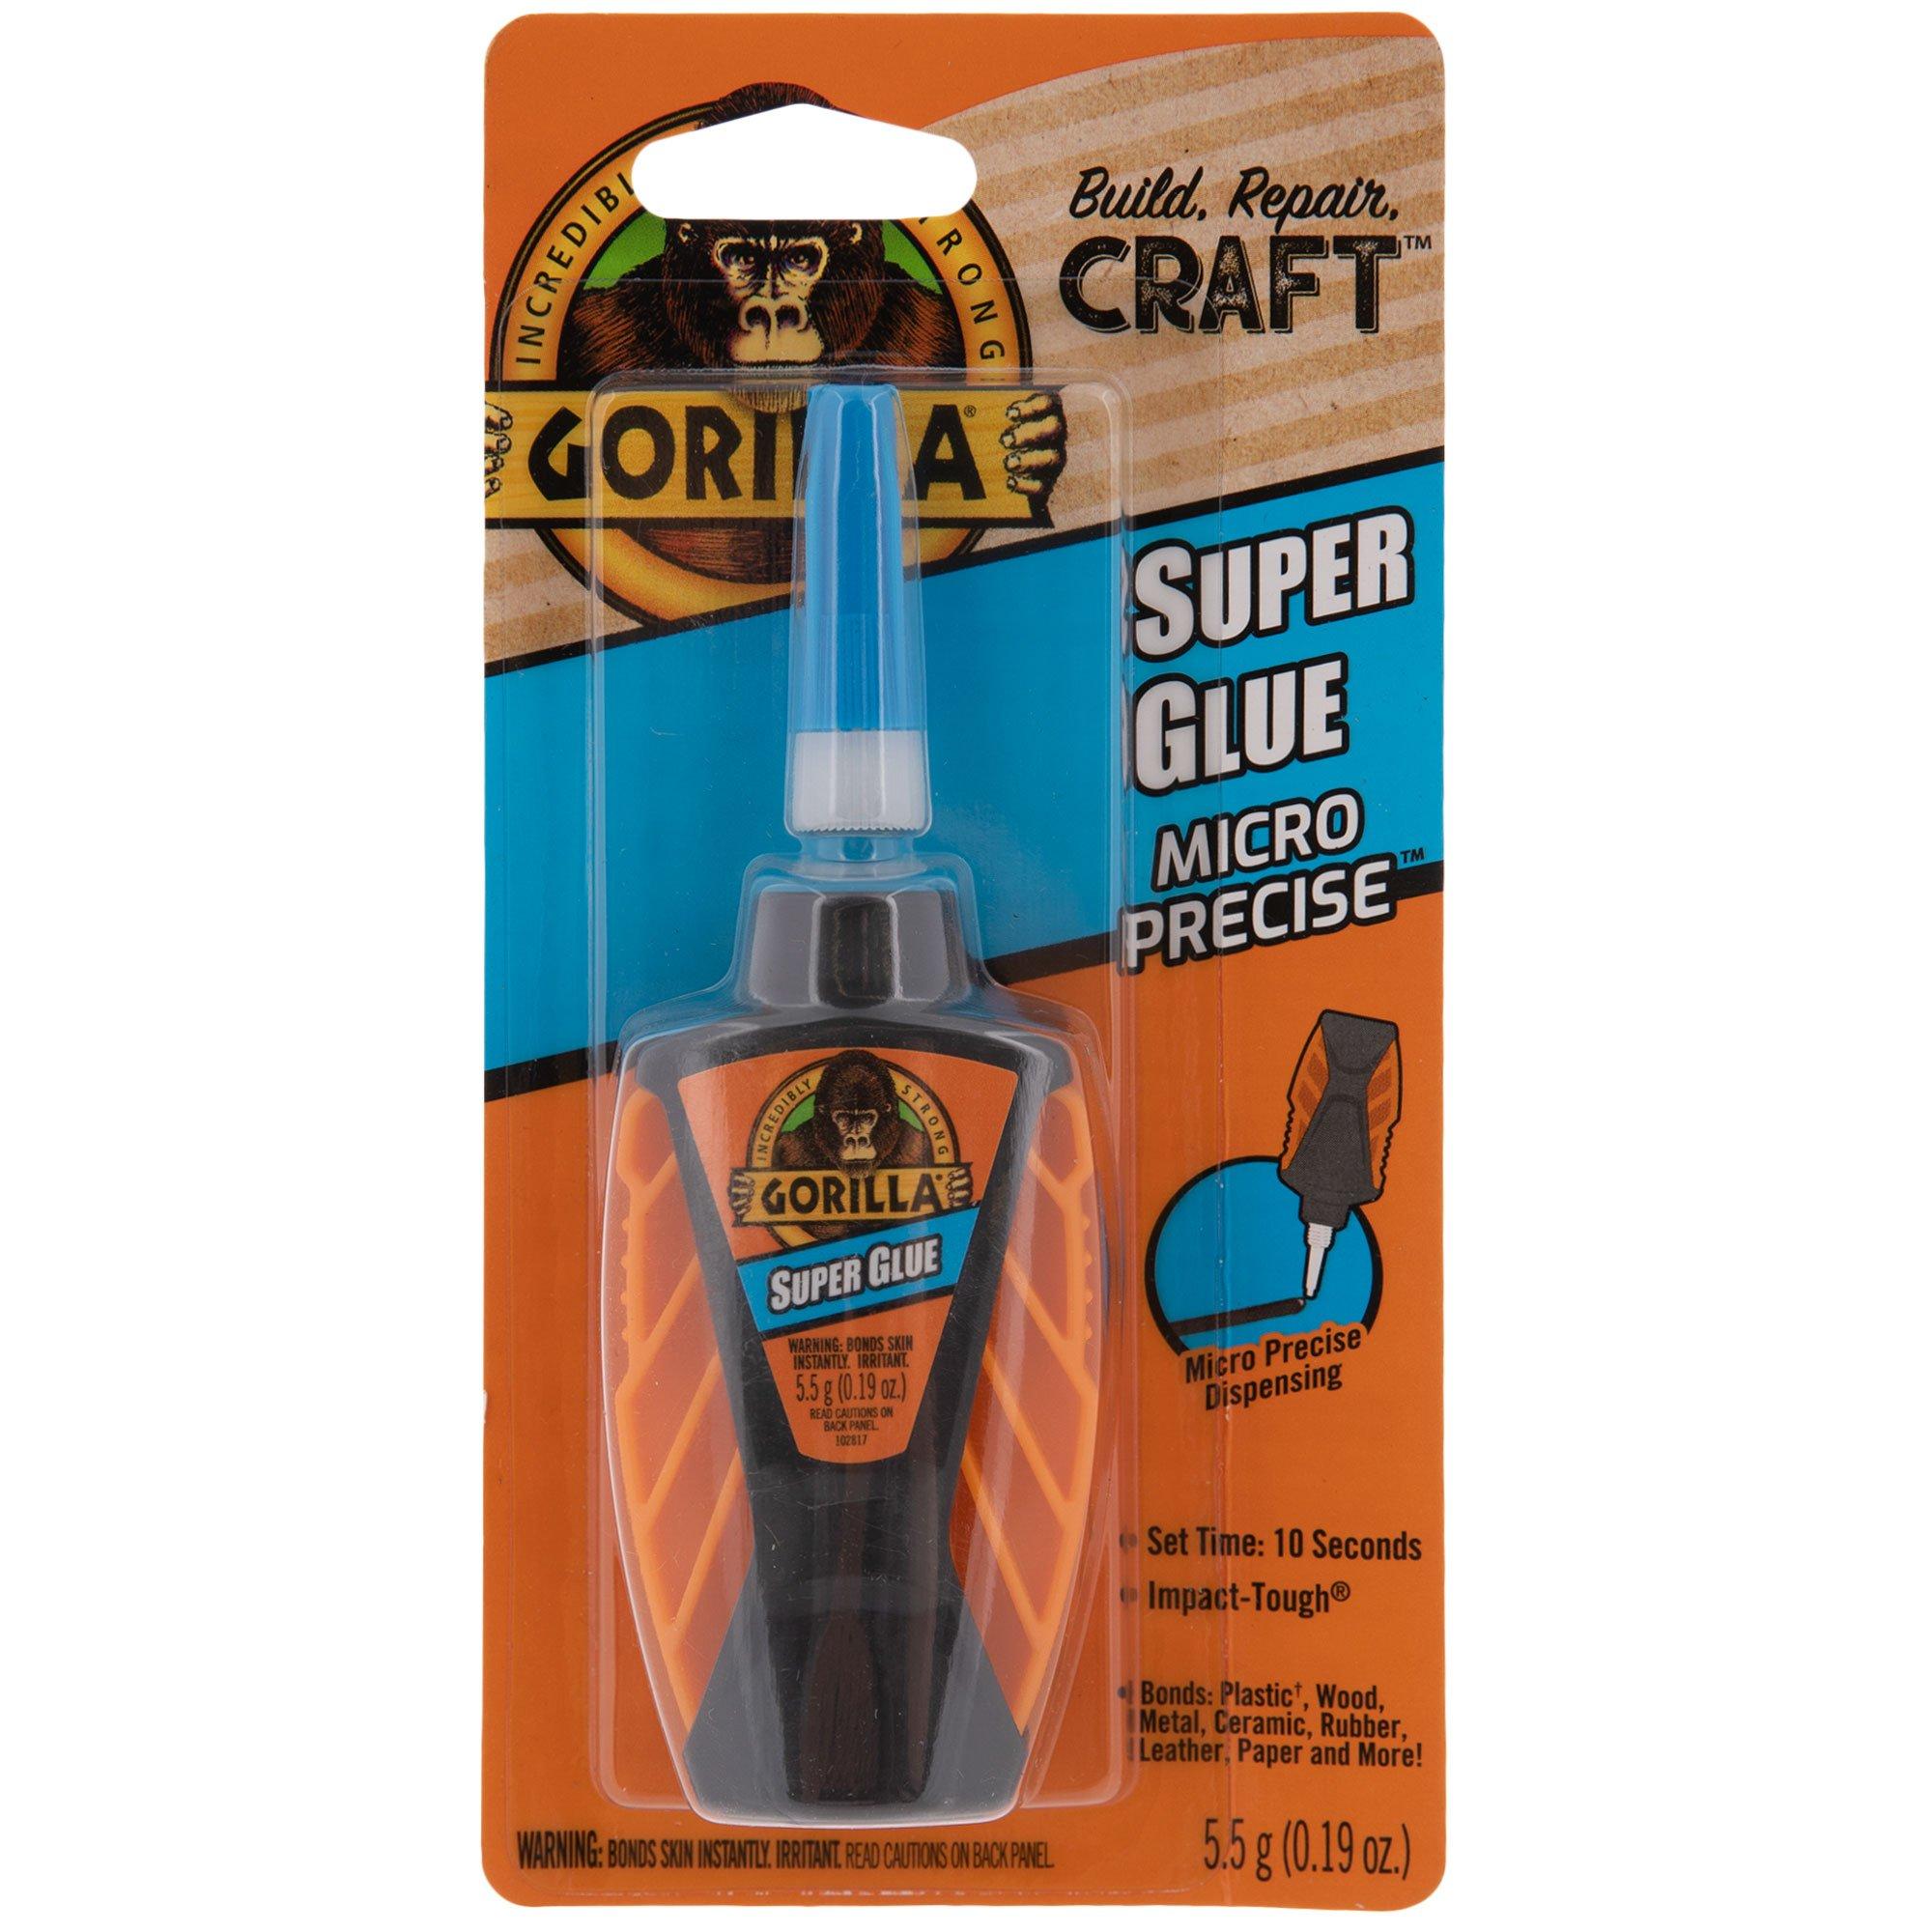 Gorilla Micro Precise Super Glue Gel, 5.5 Gram, Clear, (Pack of 1)